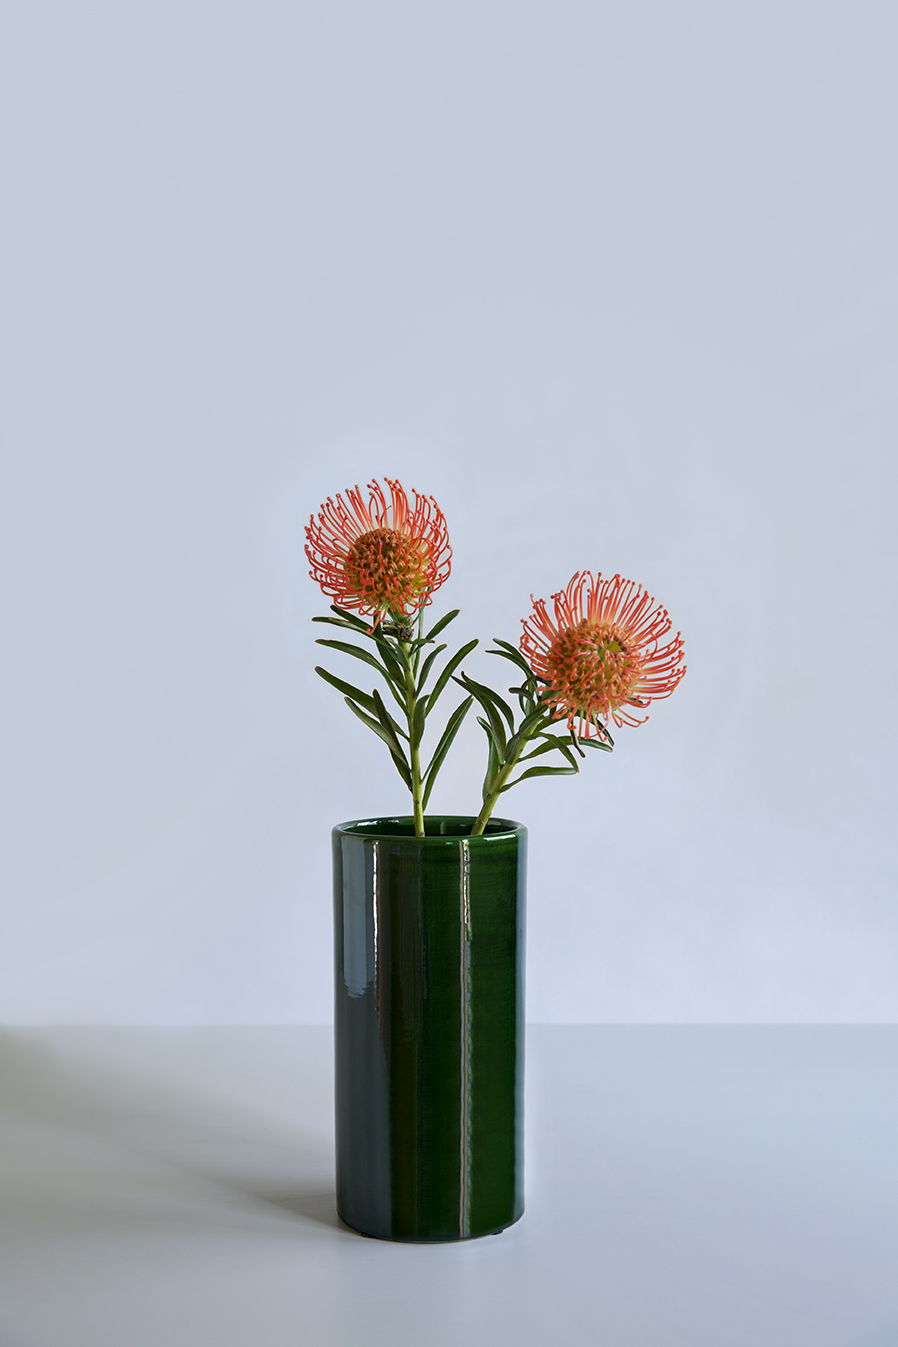 Green glazed vase with orange flowers